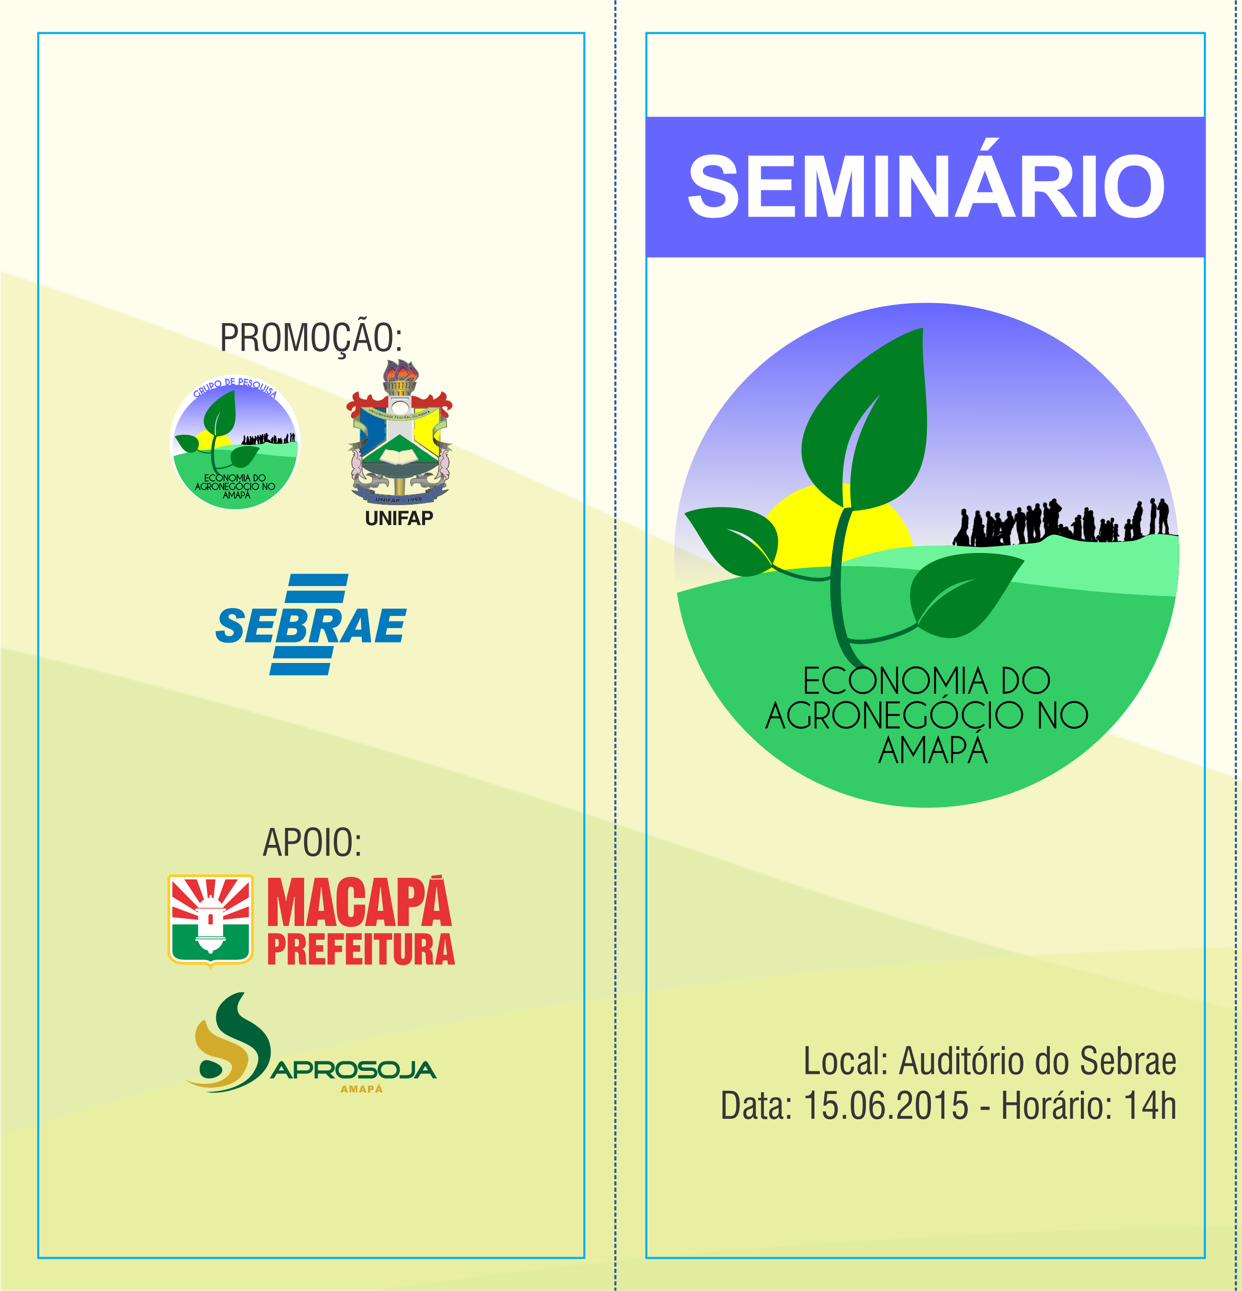 Seminário Economia do Agronegócio no Amapá acontece hoje